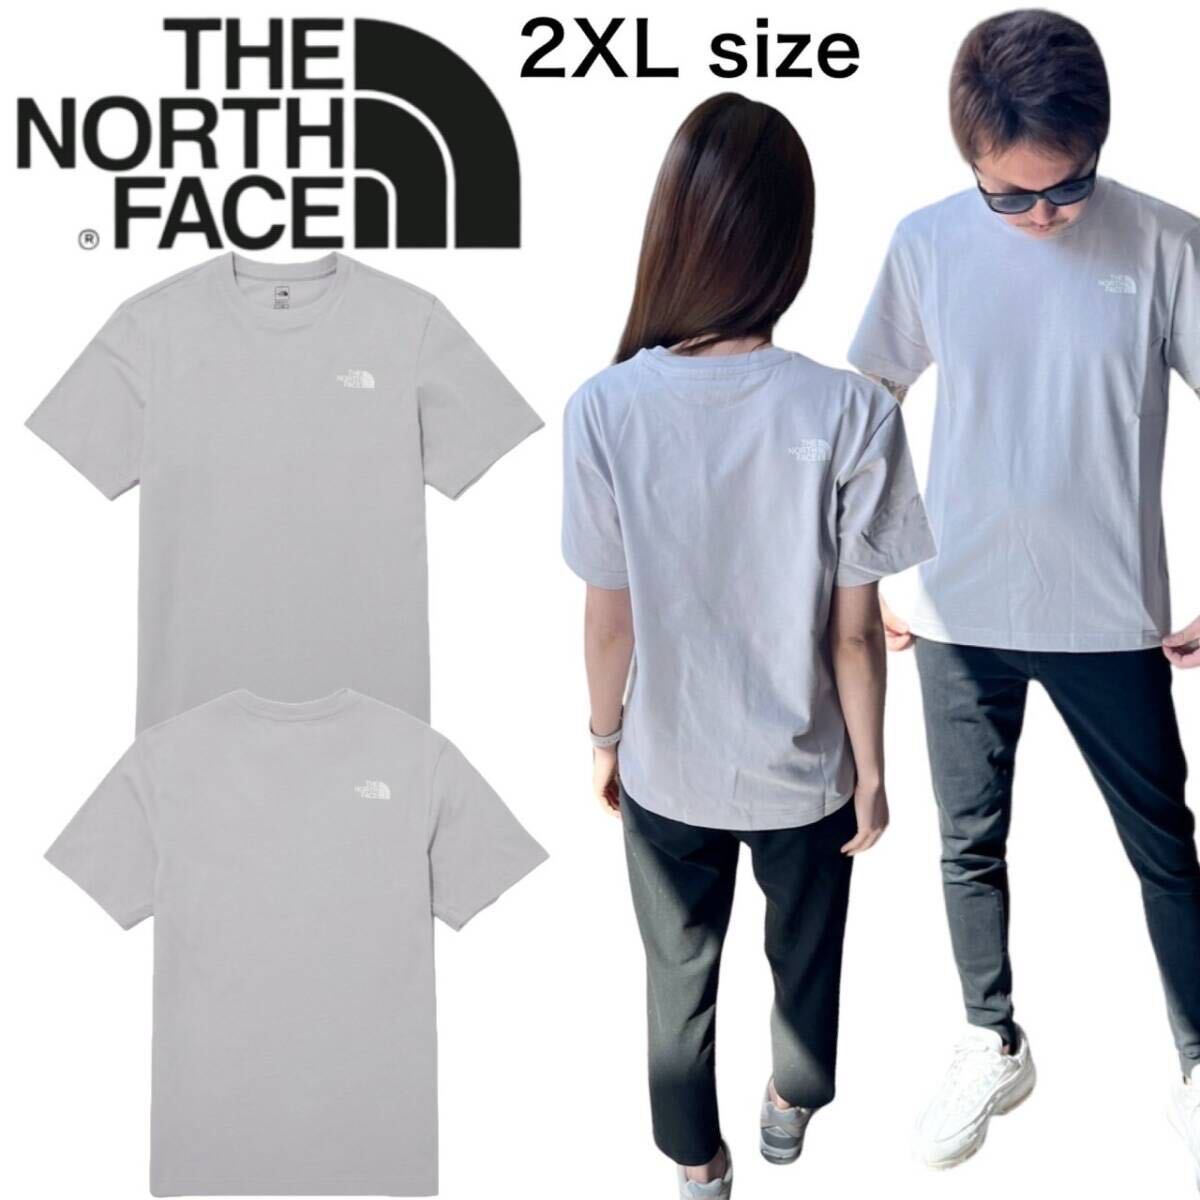 ザ ノースフェイス Tシャツ NT7U ライトグレー 2XLサイズ コットン素材 クルーネック シンプルロゴ THE NORTH FACE COTTON S/S TEE 新品